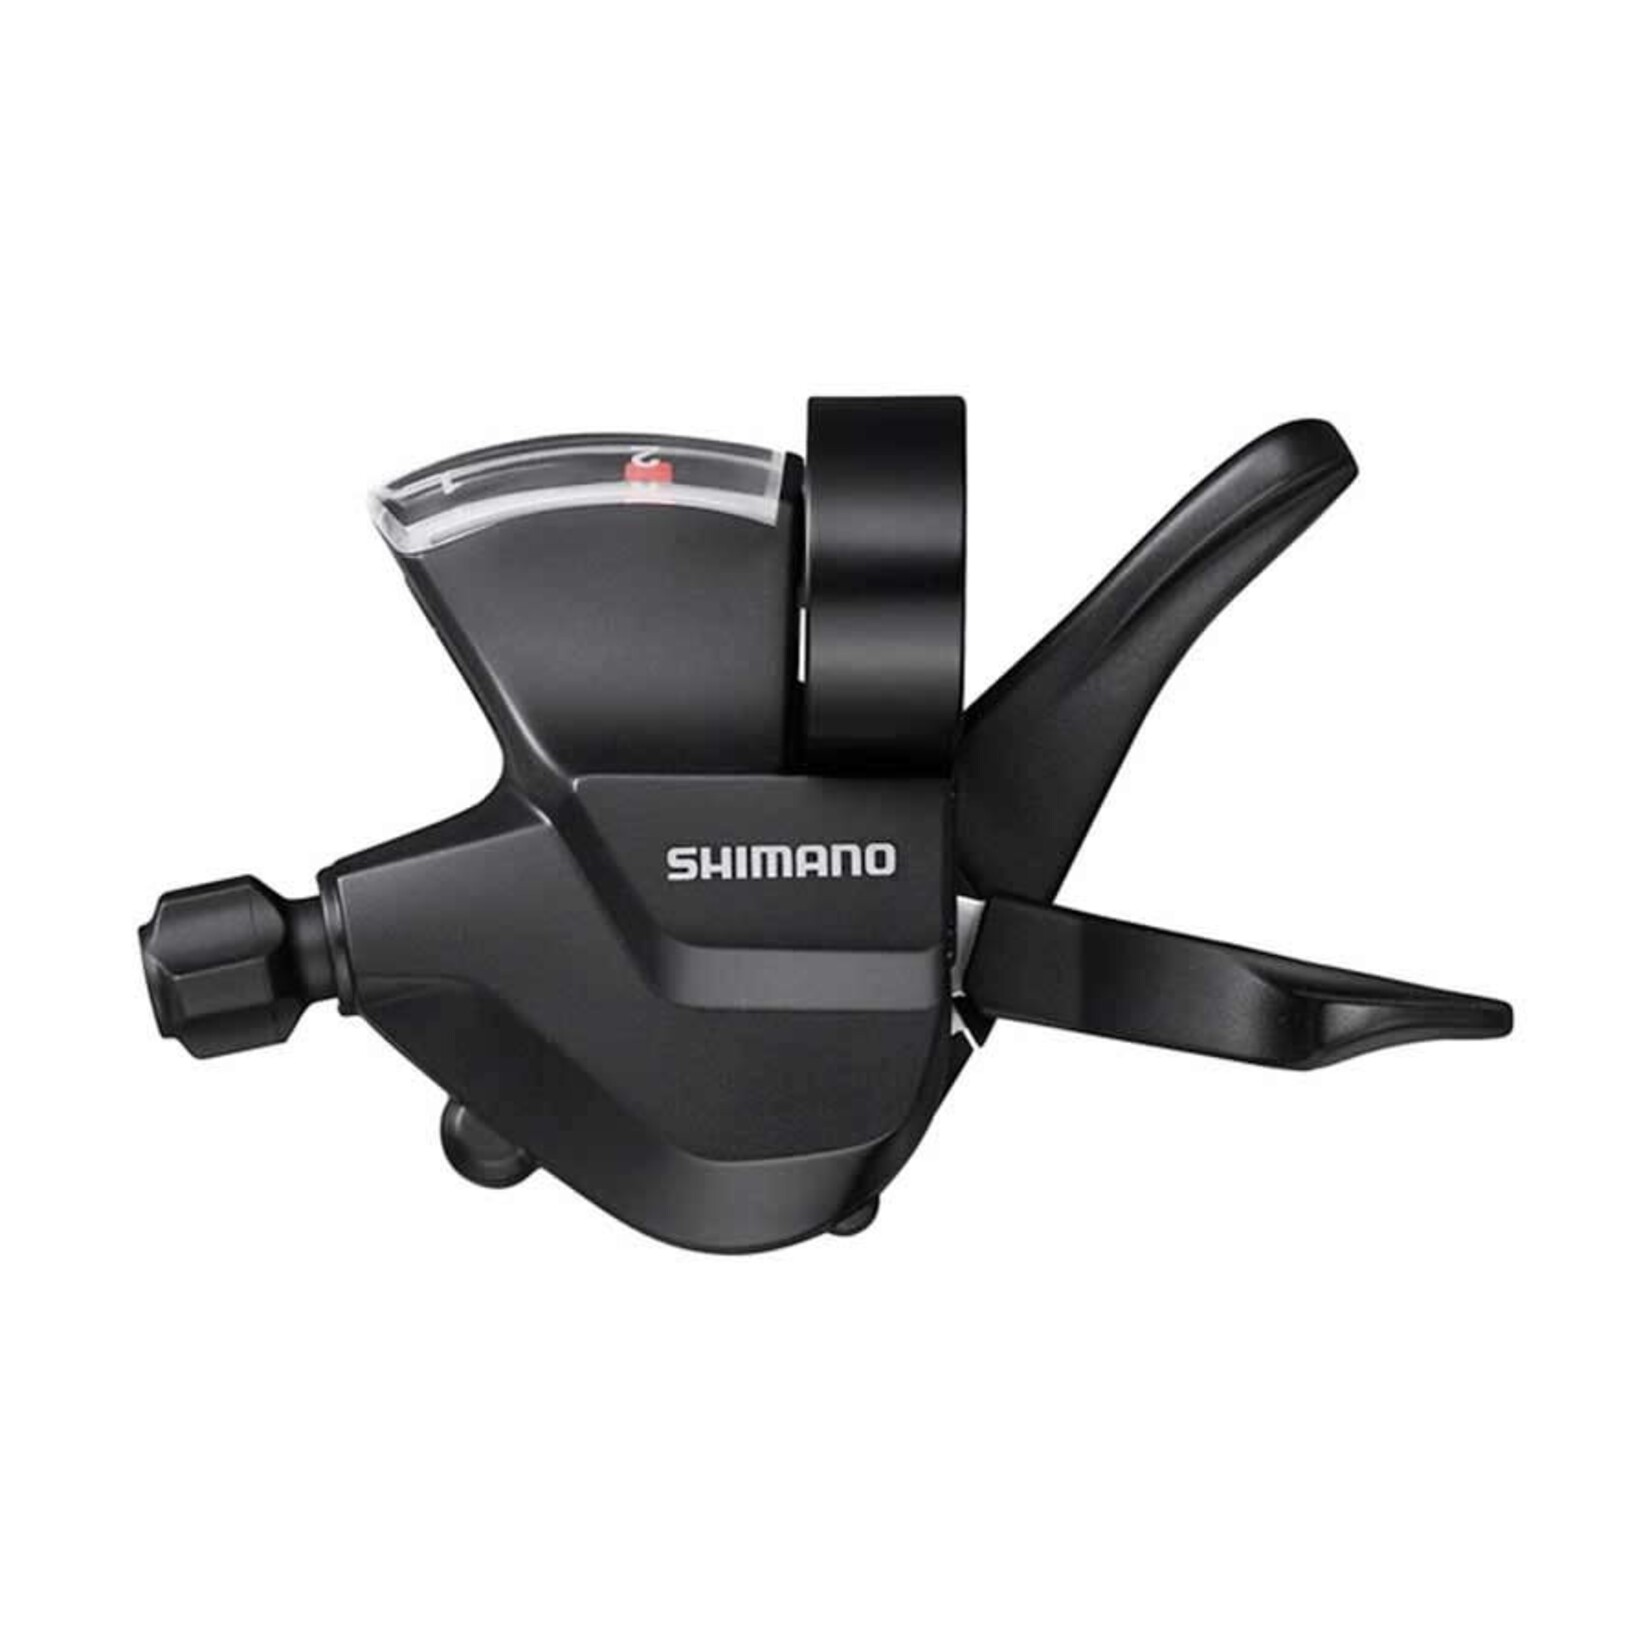 Shimano Shimano Trigger Shifter, SL-M315-L, 3-Speed, Blk